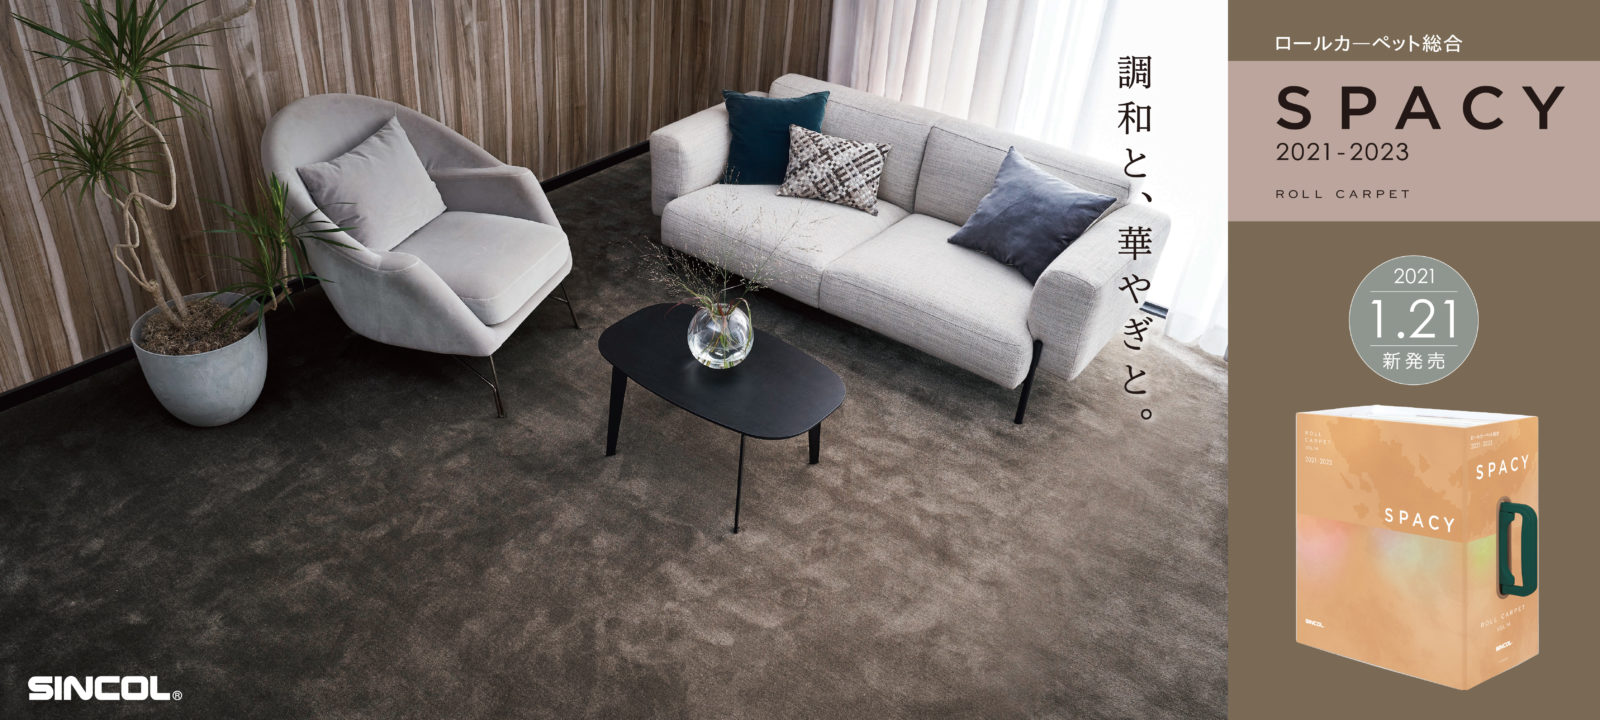 Sincol クロス カーペット 床材 カーテン 椅子用素材など シンコールブランドやオリジナル製品でトータルにご提案いたします